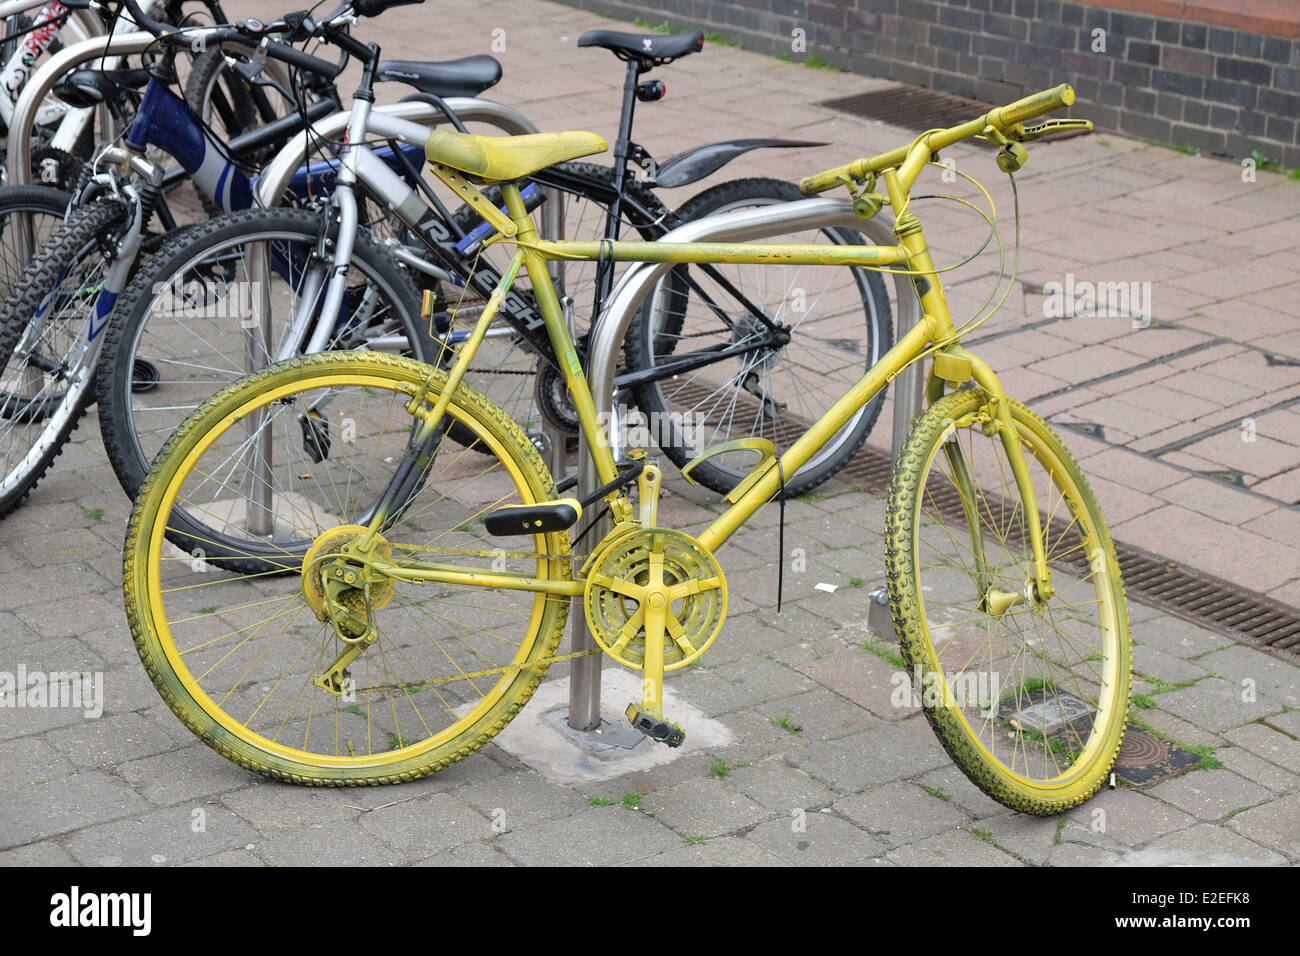 Gelbe Fahrräder in Loughborough Hervorhebung Fahrraddiebstahl und eine visuelle Warnung an die Verbrecher, die die Polizei gerade sind Stockfoto